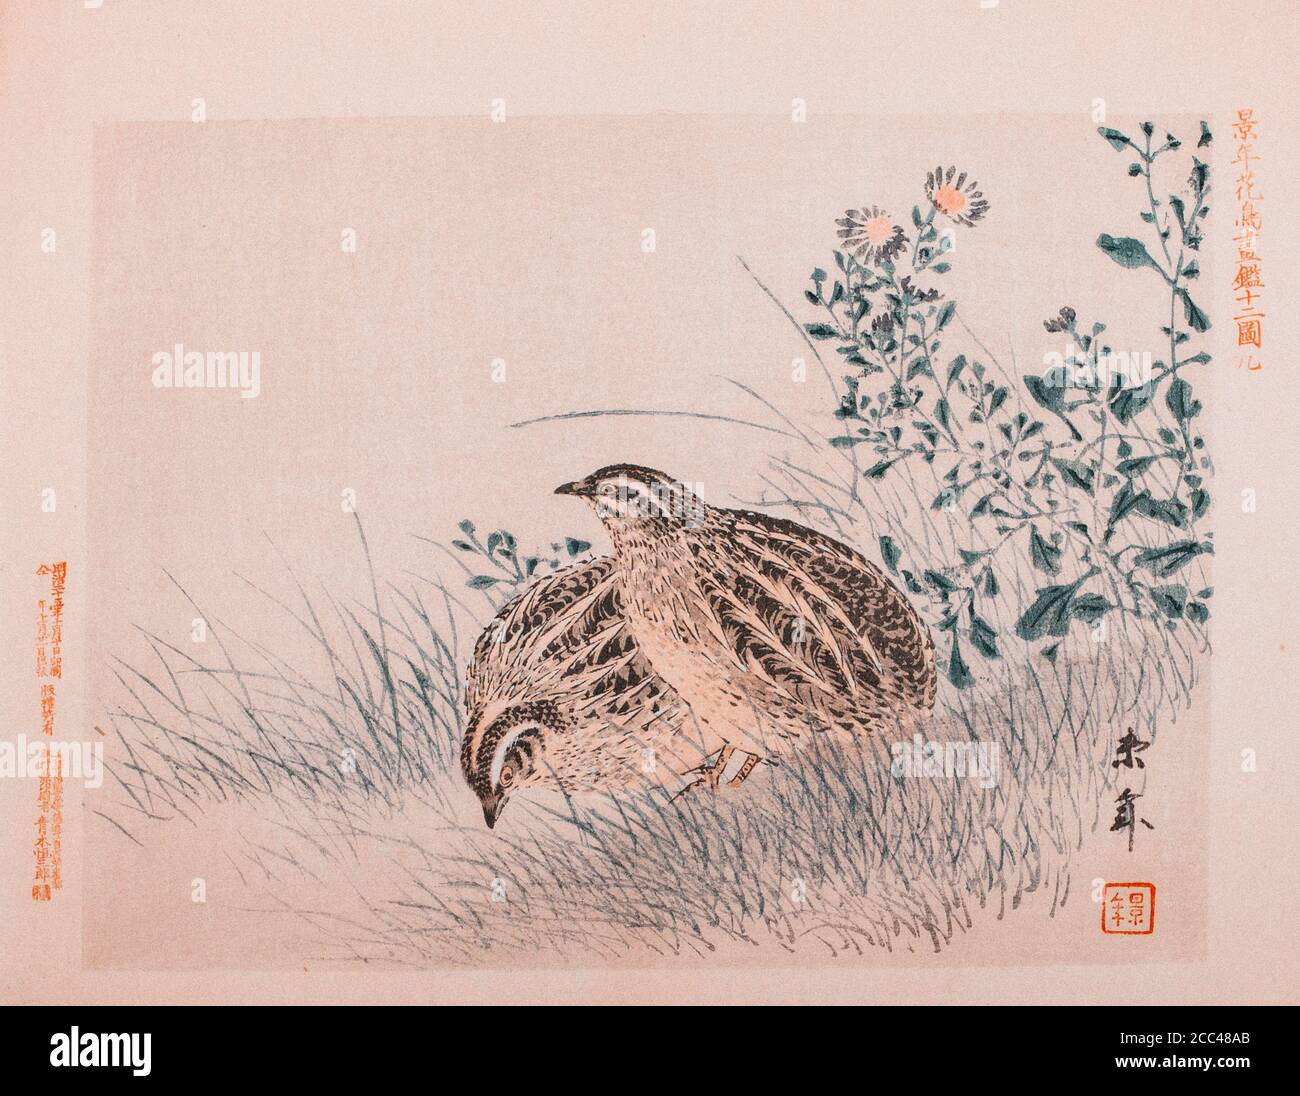 Imao keinen: Keinen Kacho Gafu (Four Seasons Bird and Flower Alben), Wachteln. Japan. 1892 Imao keinen (1845 – 1924) war ein japanischer Maler und Druckerei d Stockfoto